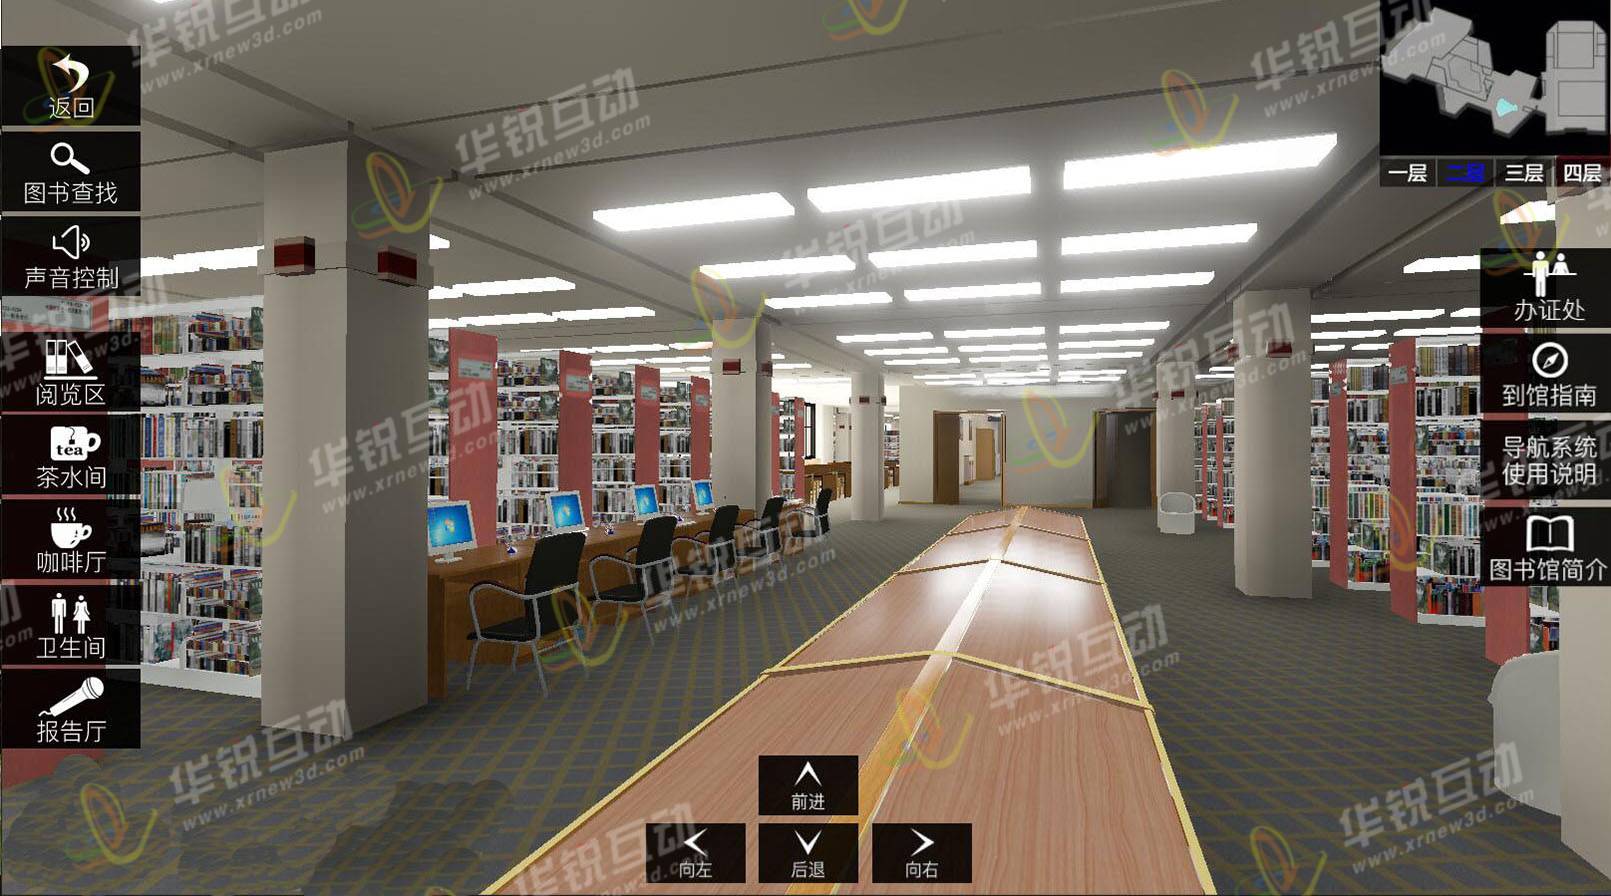 图书馆VR全景漫游系统